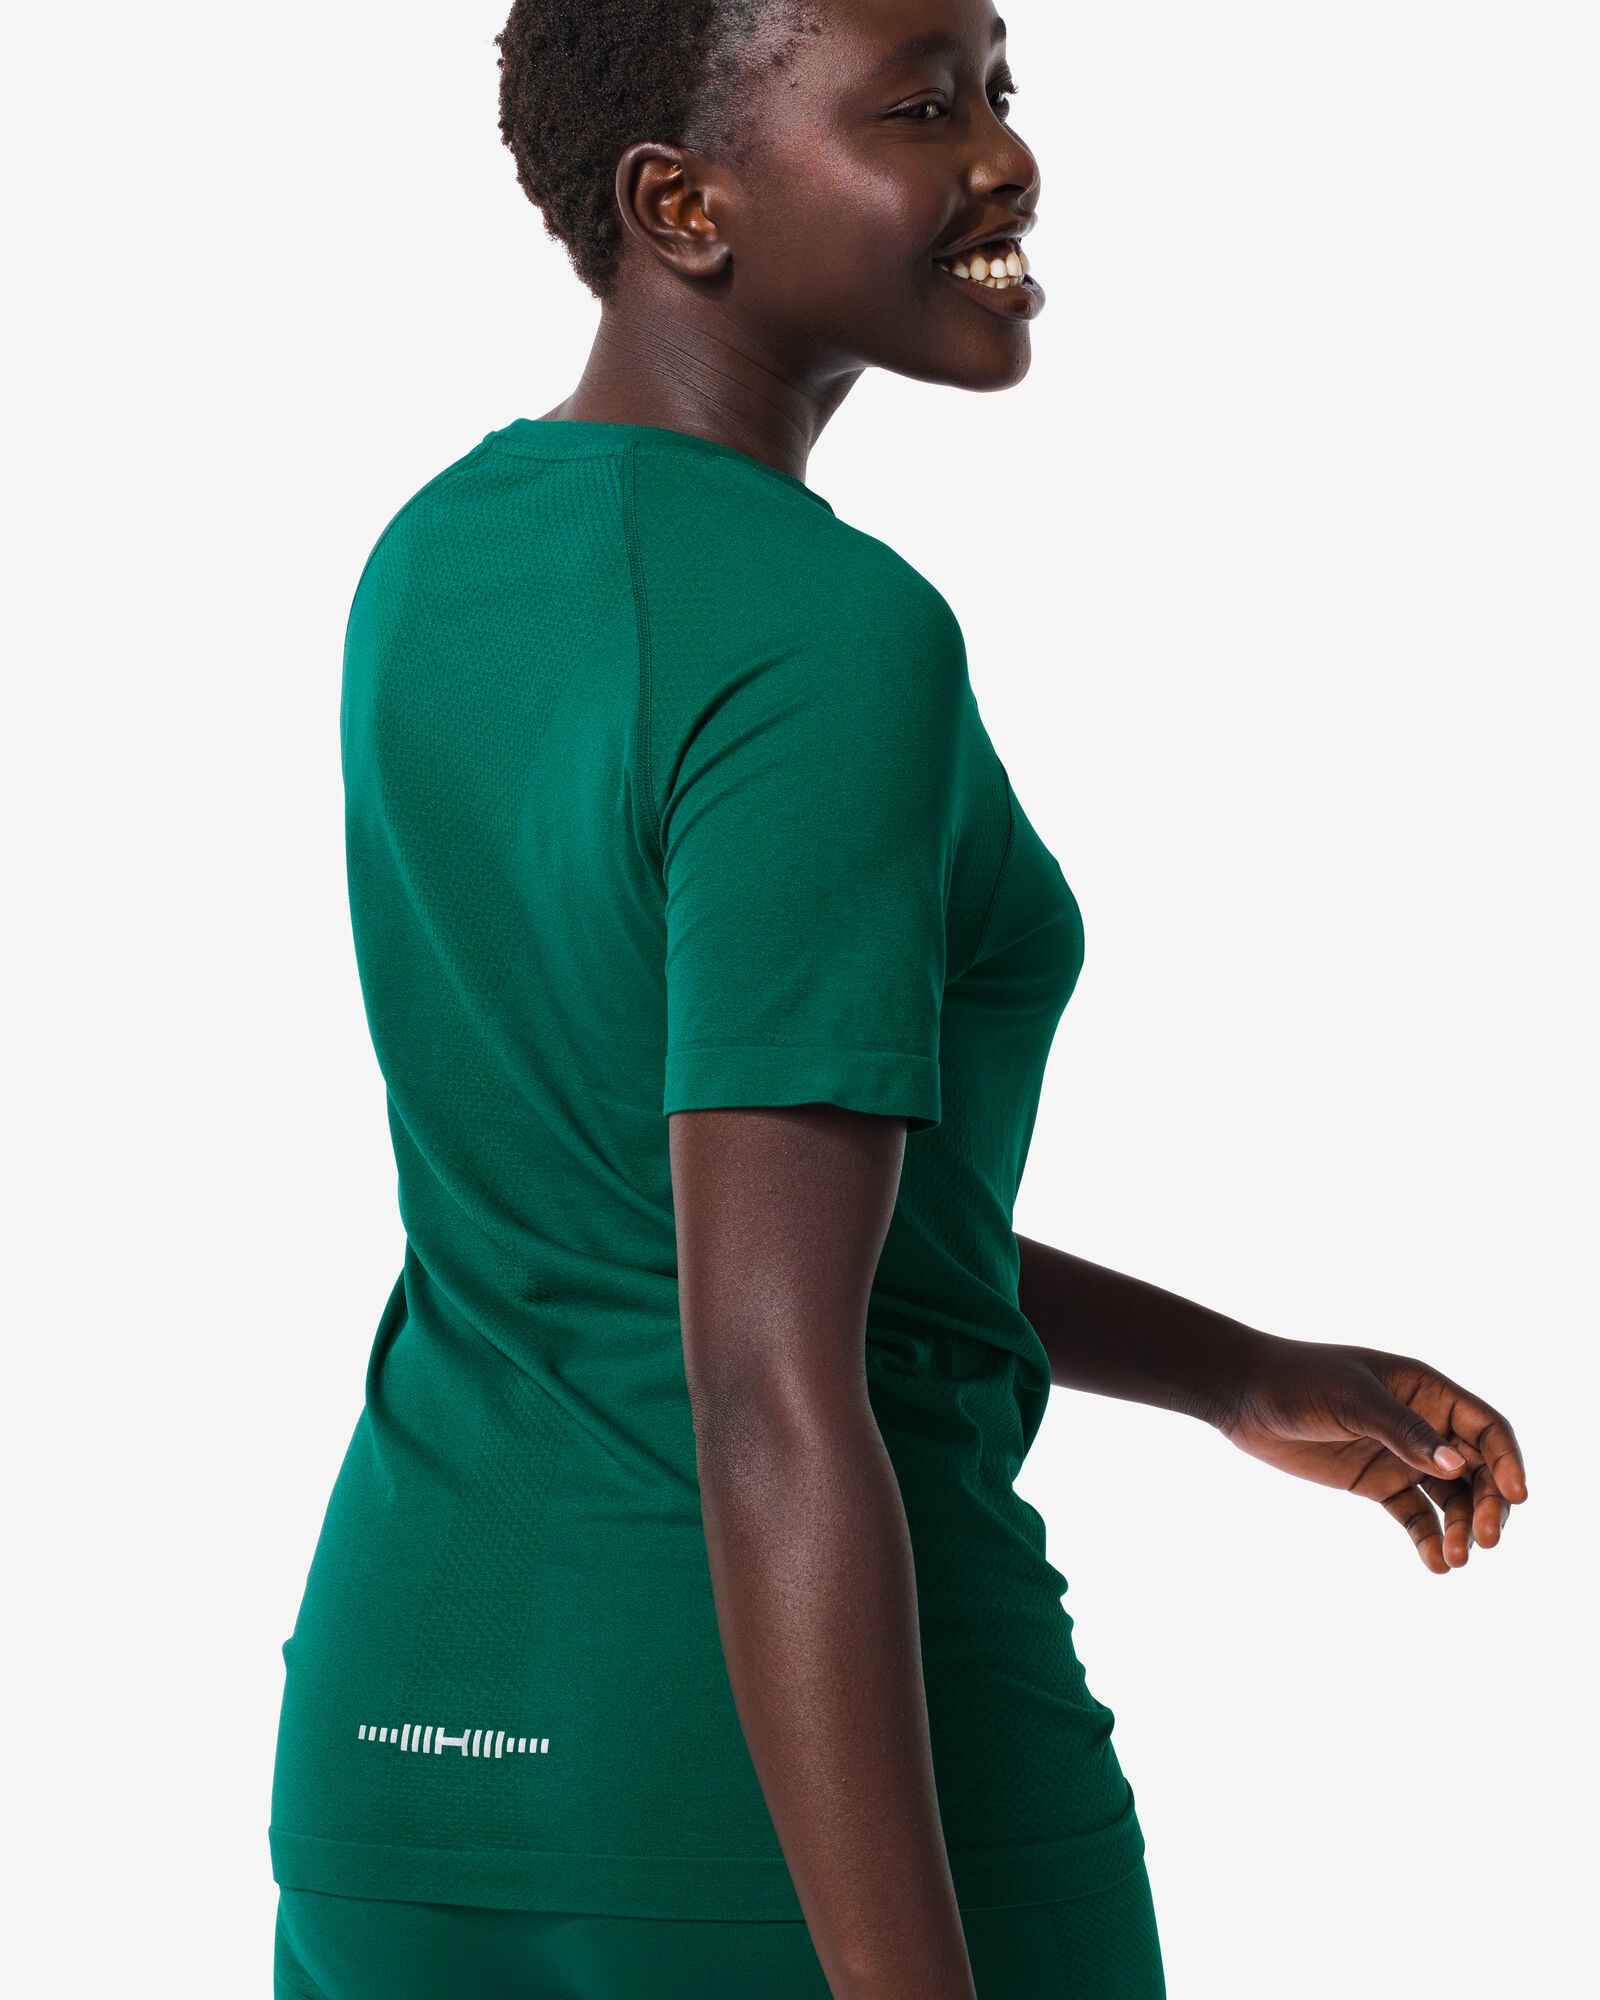 Damen-Sportshirt, nahtlos dunkelgrün dunkelgrün - 36090116DARKGREEN - HEMA